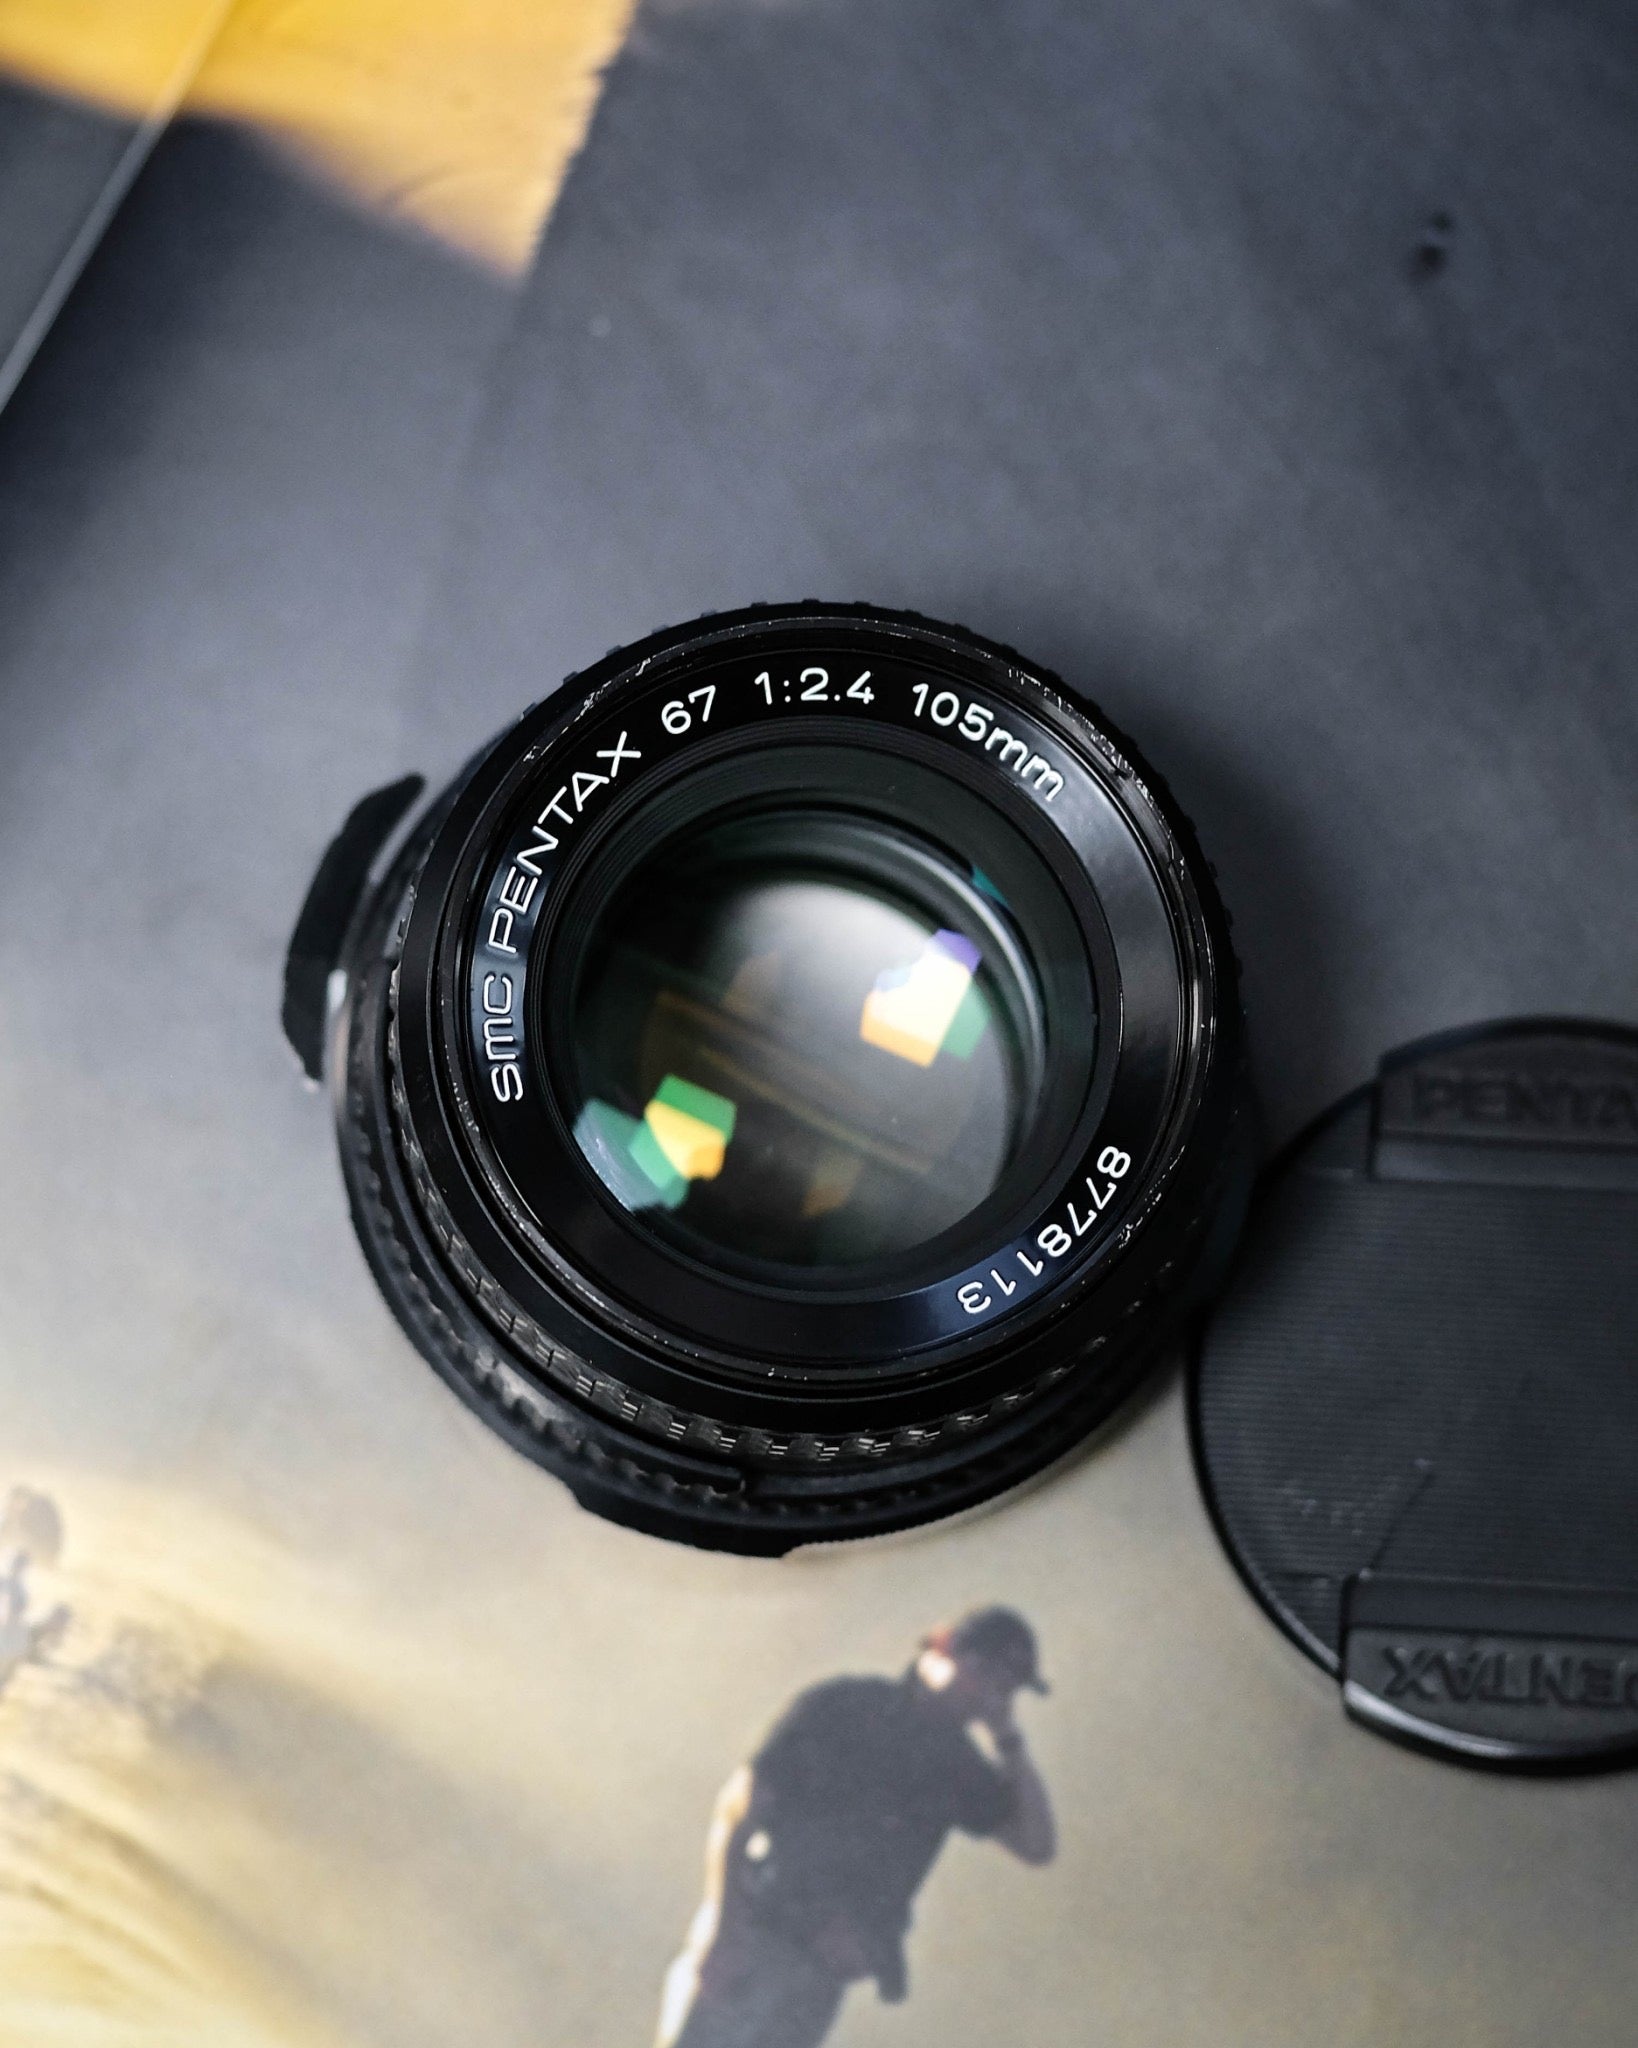 Pentax 67 105mm 2.4 - レンズ(単焦点)